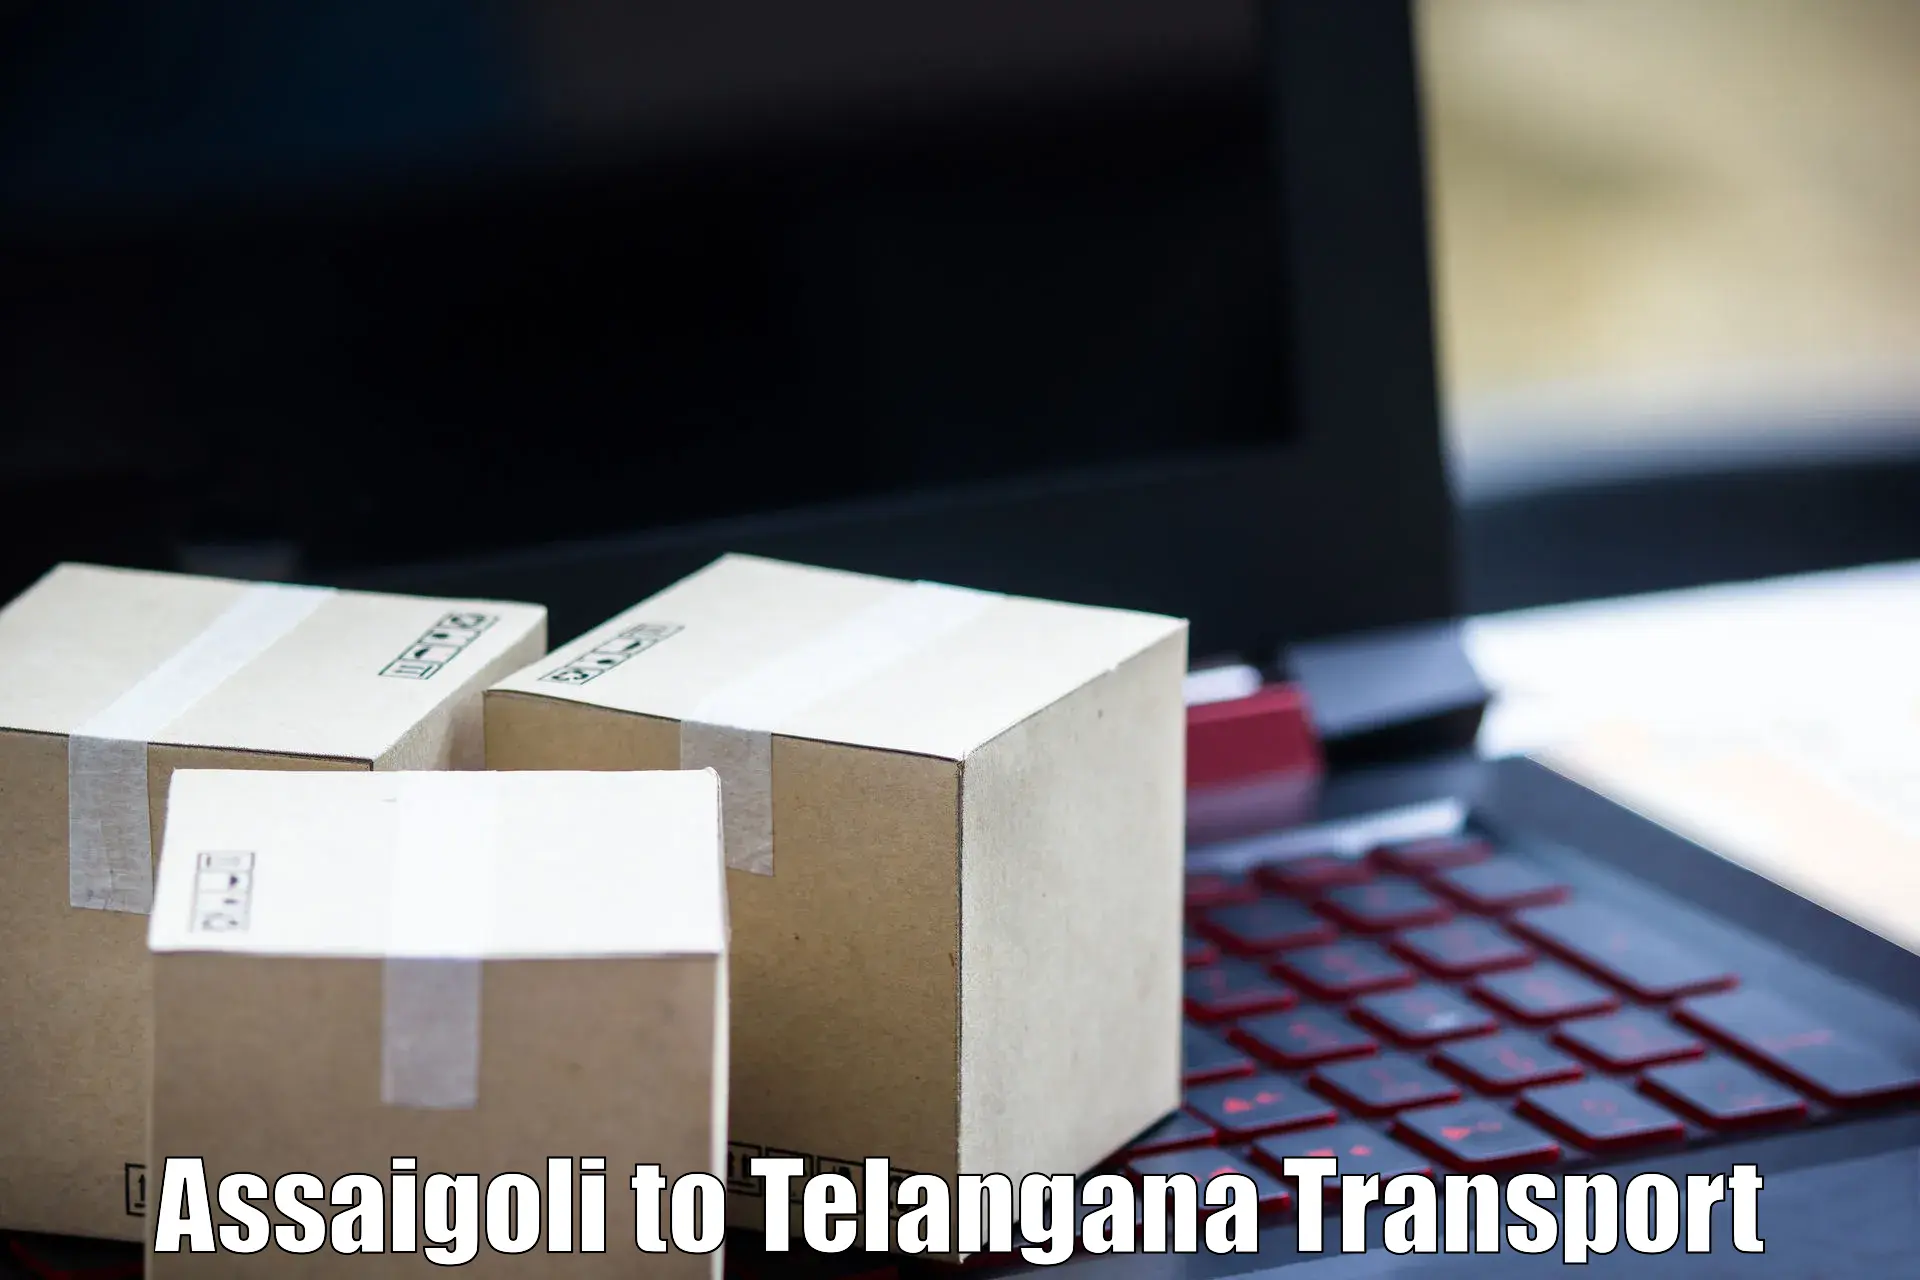 Container transportation services Assaigoli to Sikanderguda